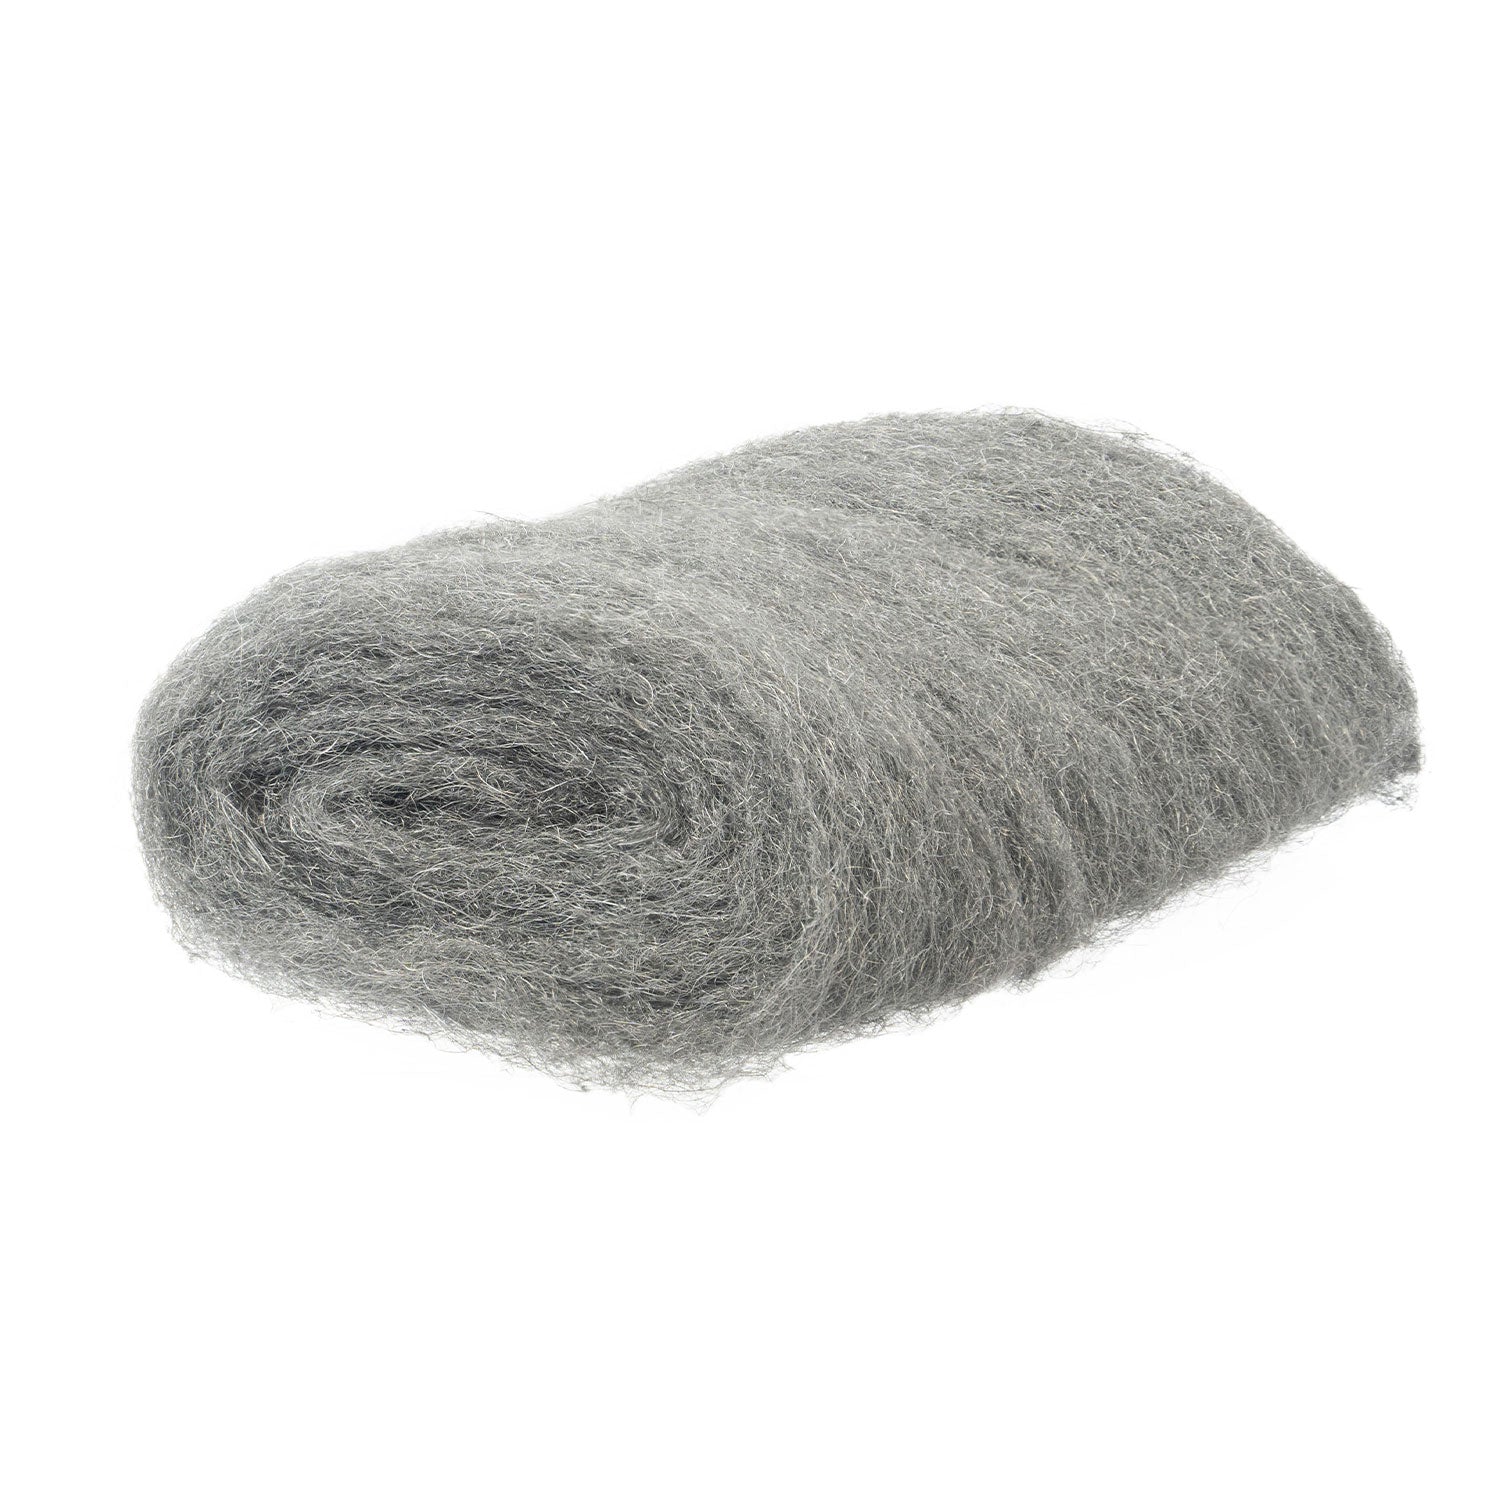 steel-wool-sample